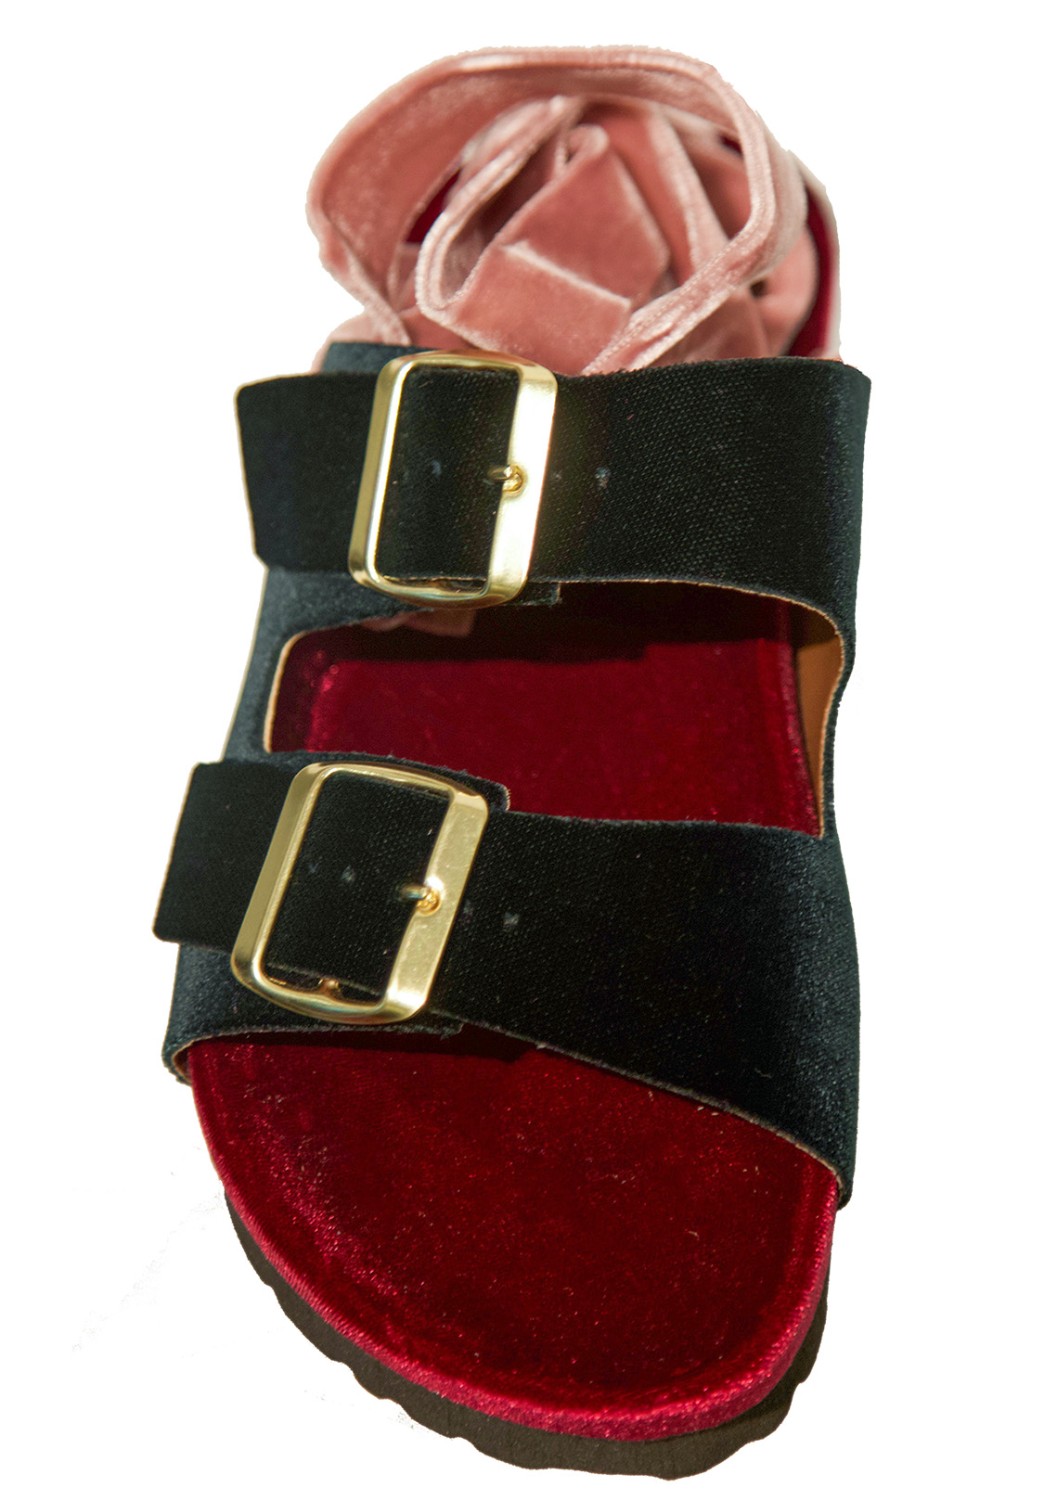 shop Gia Couture Sales Scarpe: Sandali Gia Couture, in velluto, dettaglio laccio rosa antico, fasce in verde e pianta in rosso scuro, suola in gomma.

Composizione: 100% velluto.
Suola: 100% gomma. number 1257